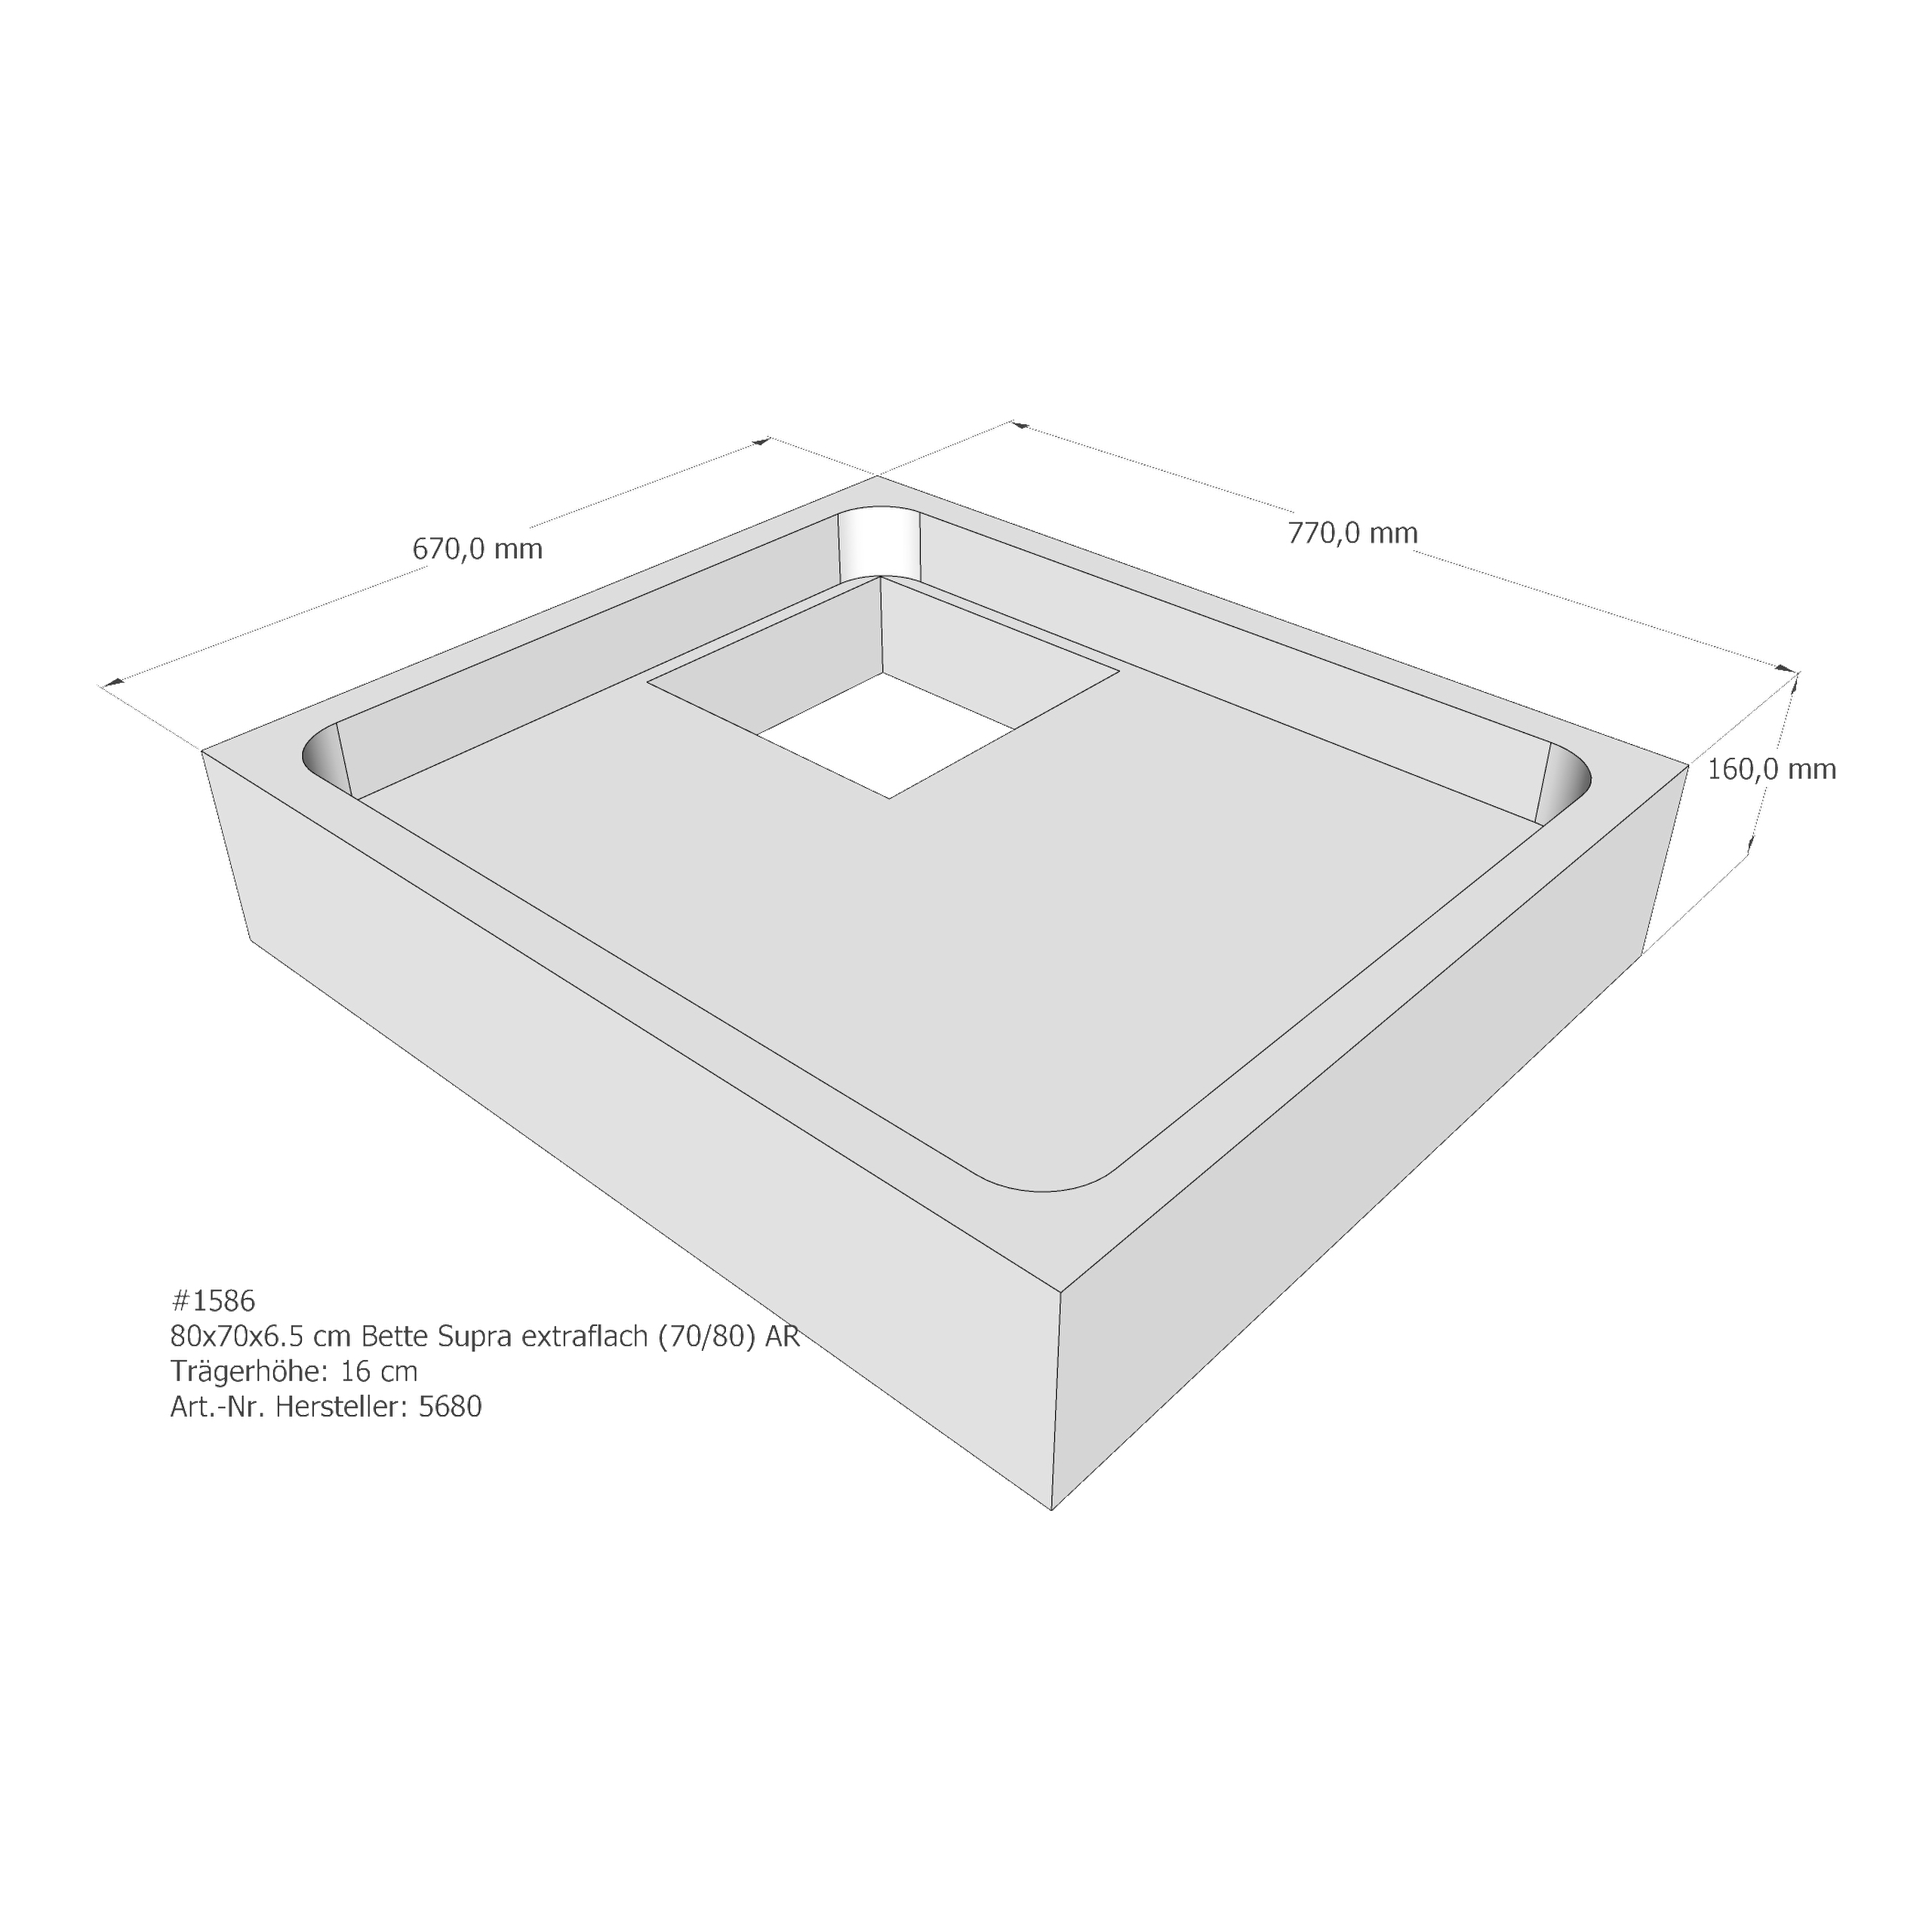 Duschwannenträger Bette BetteSupra (extraflach) 80x70x6,5 cm AR210